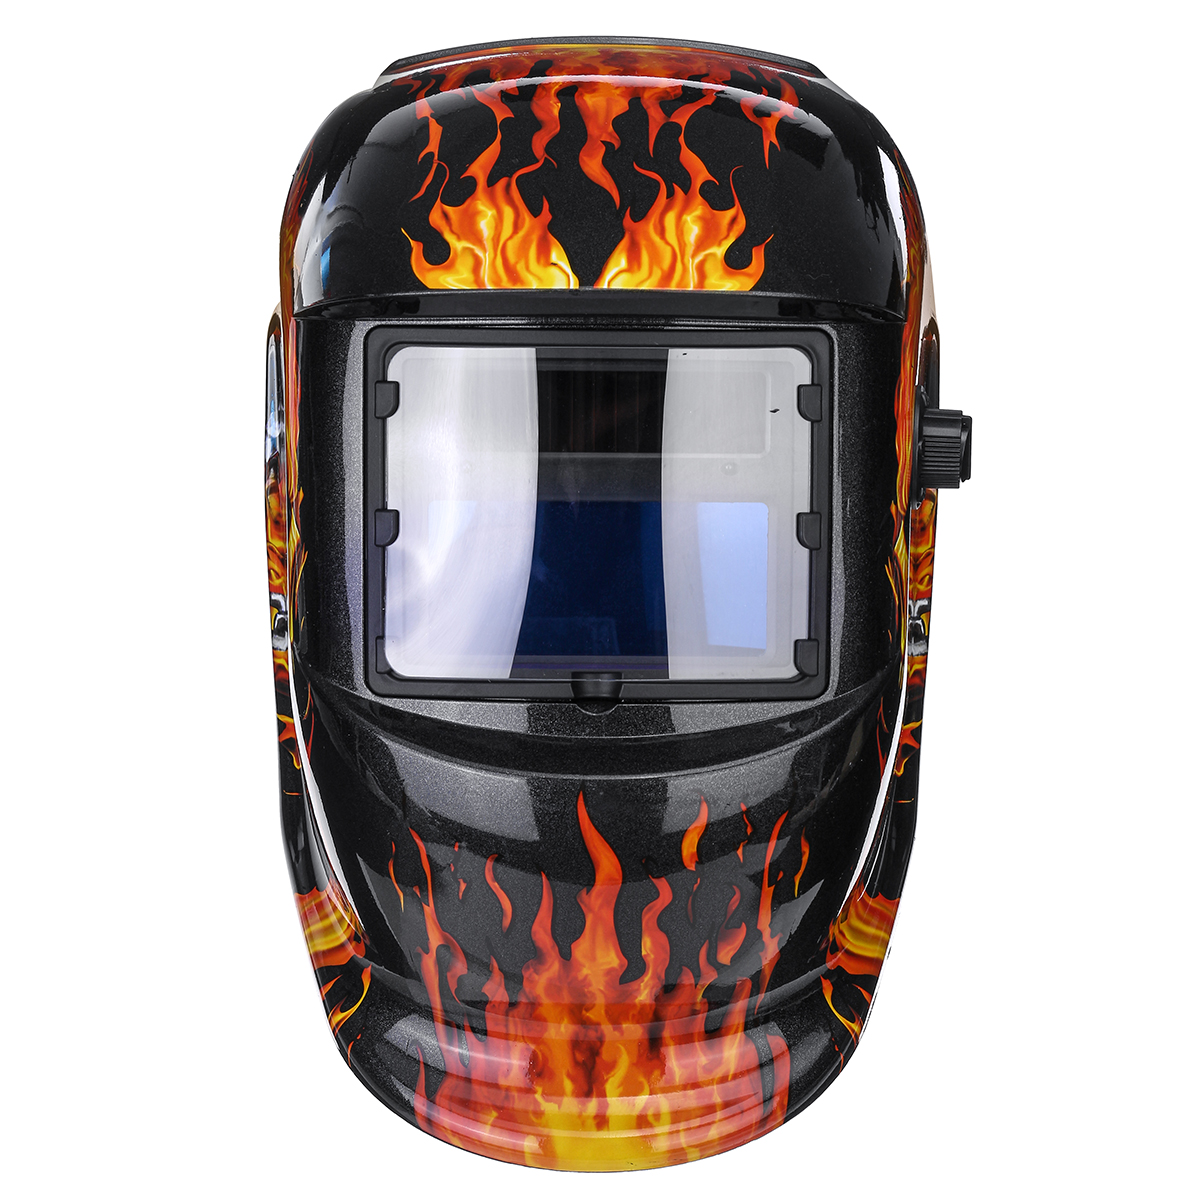 Solar-Auto-Darkening-Welding-Helmet-Len-Mask-Grinding-Welder-Protective-Mask-1625108-4